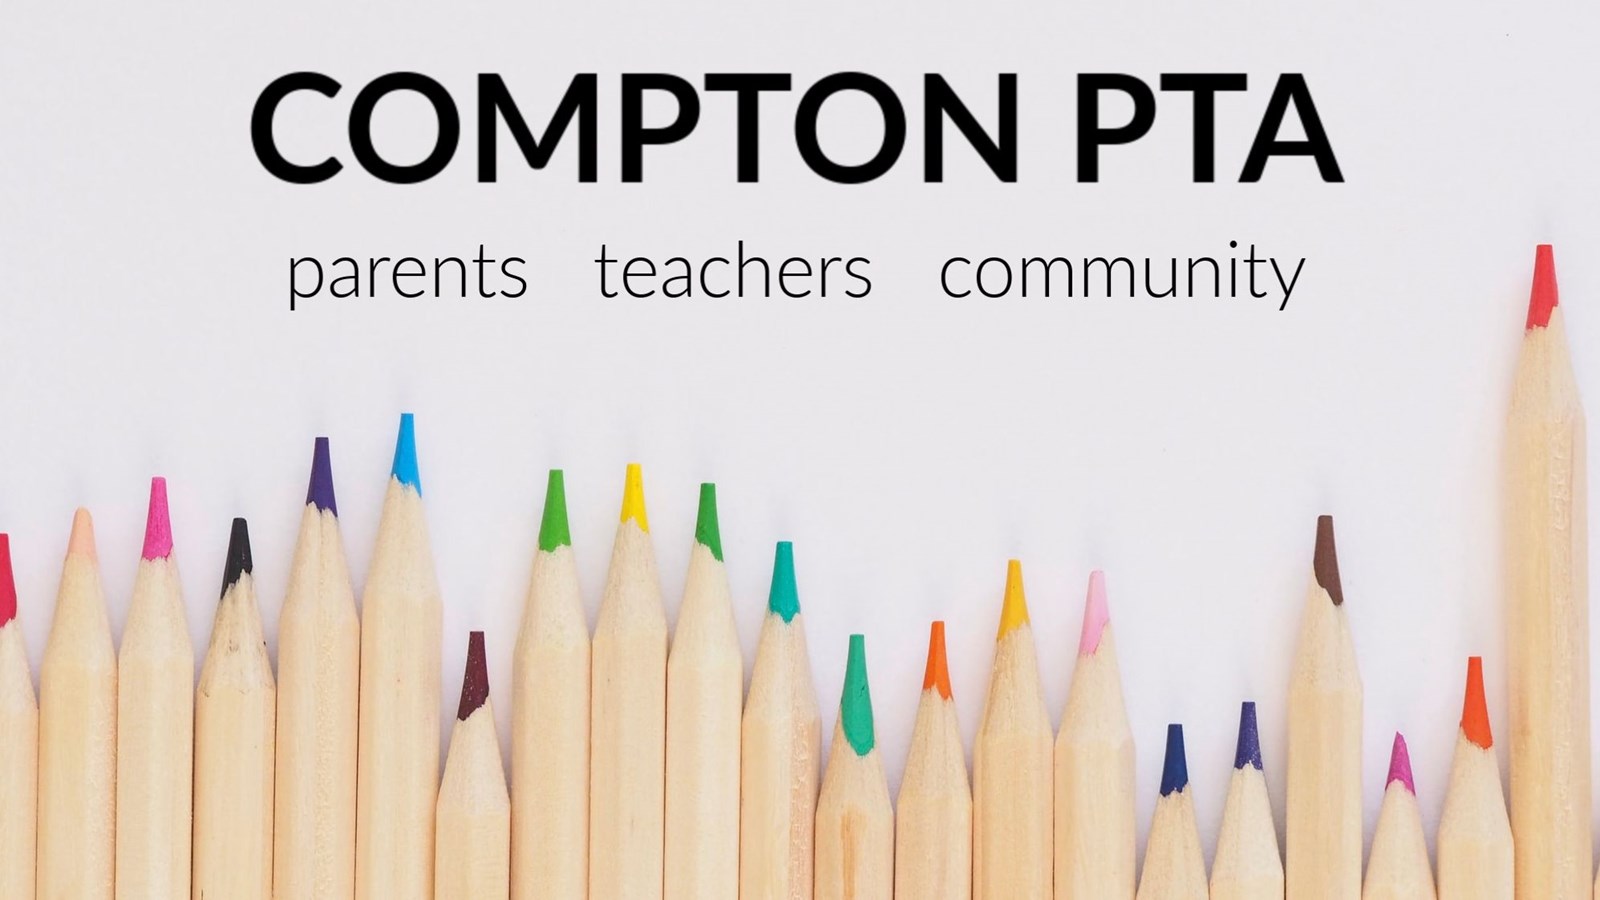 Compton PTA - parents, teachers, community